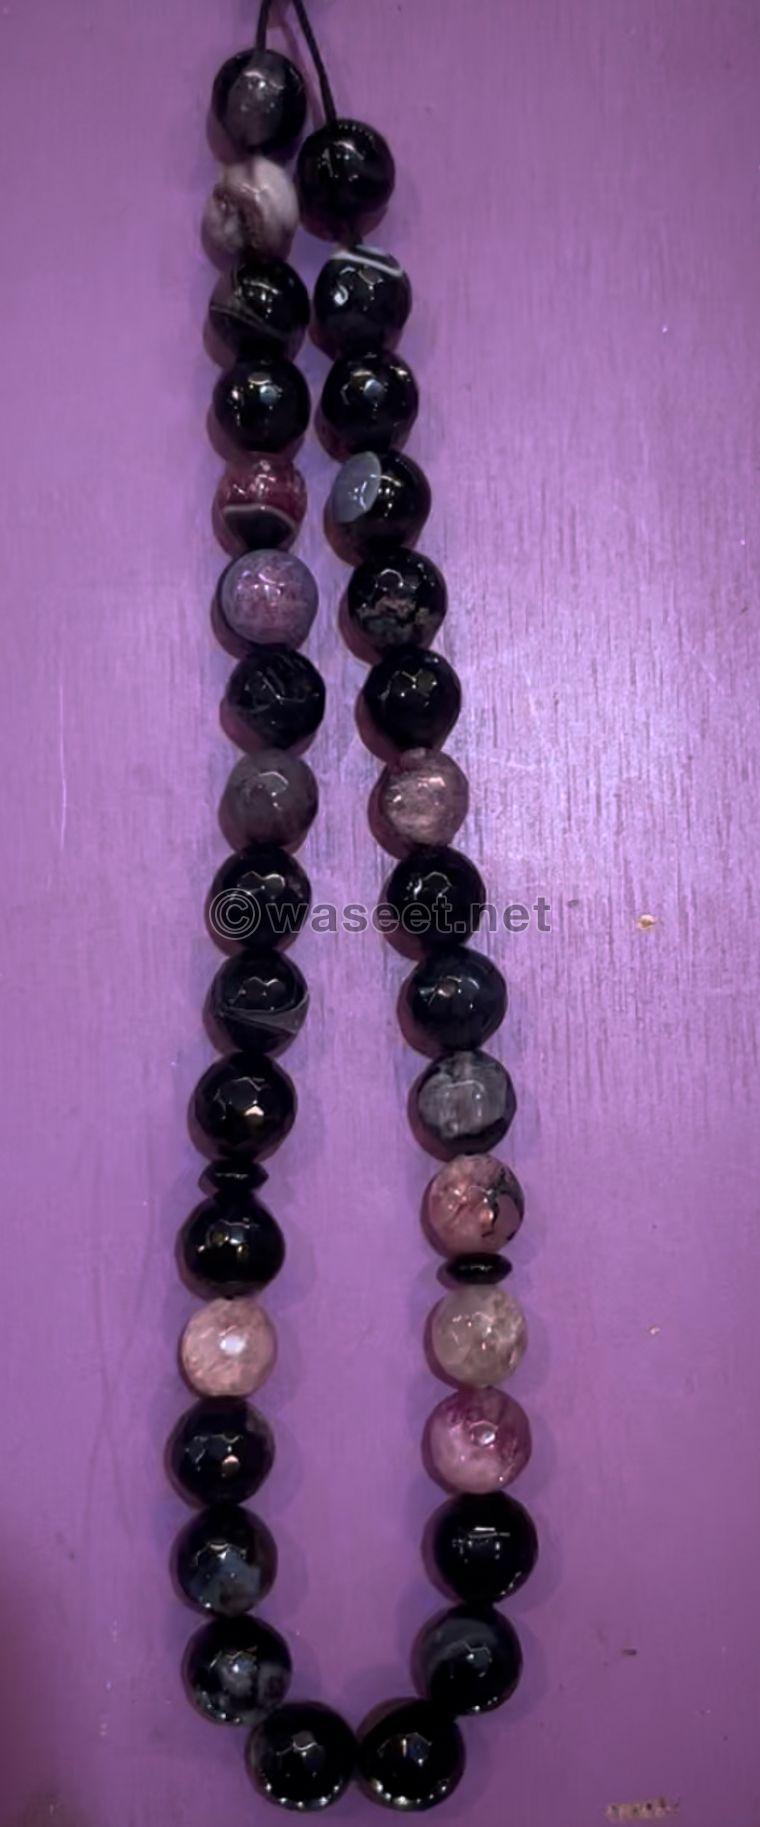 Fairuz stone rosary 1